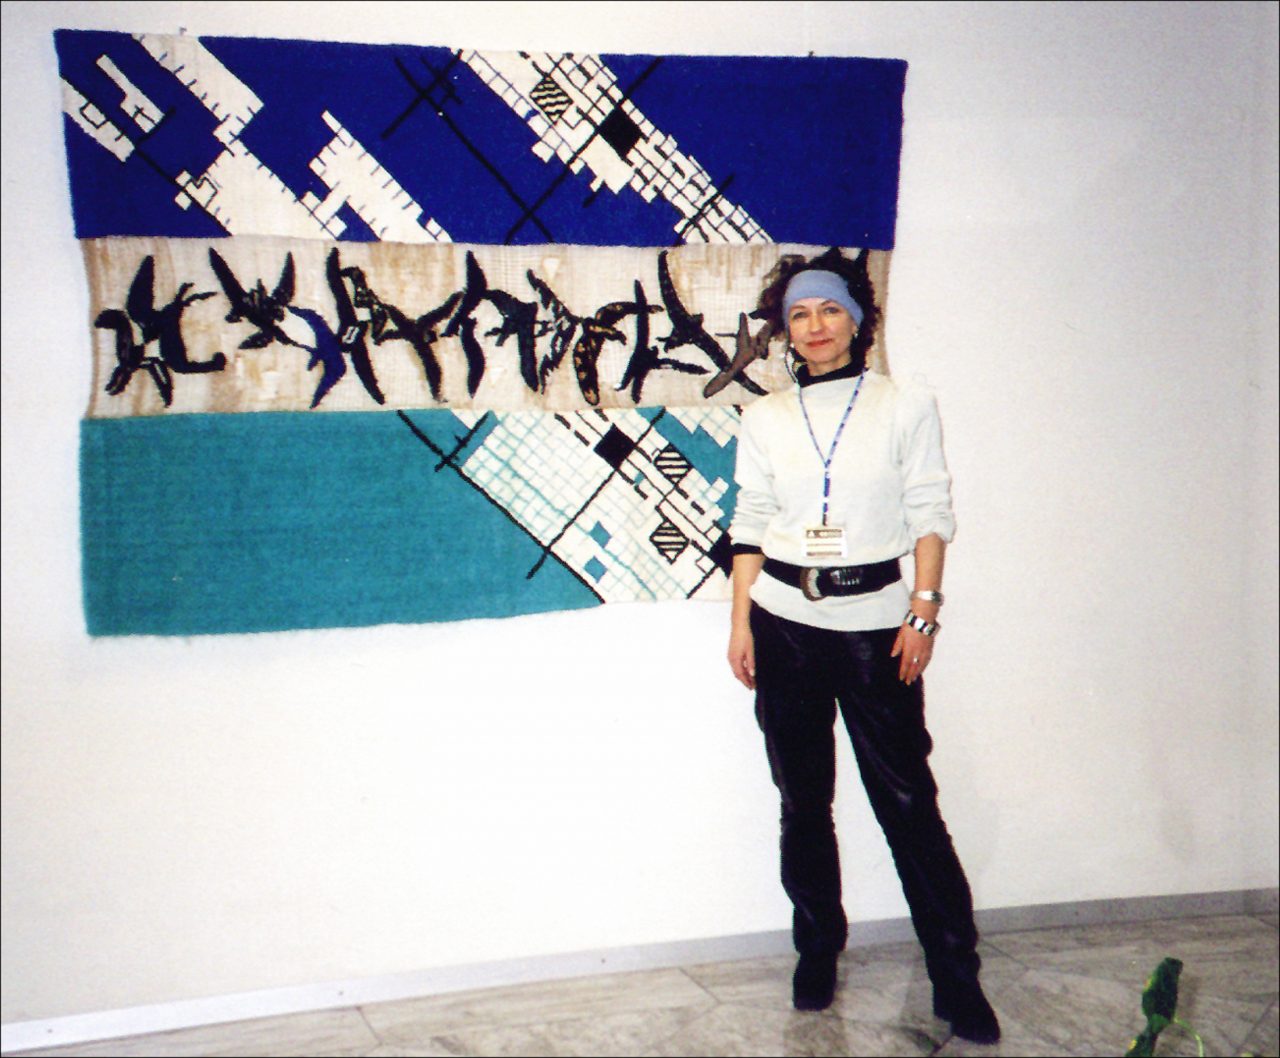 LINIENFLUG, 116 x 180 cm, 1996, Ausstellung